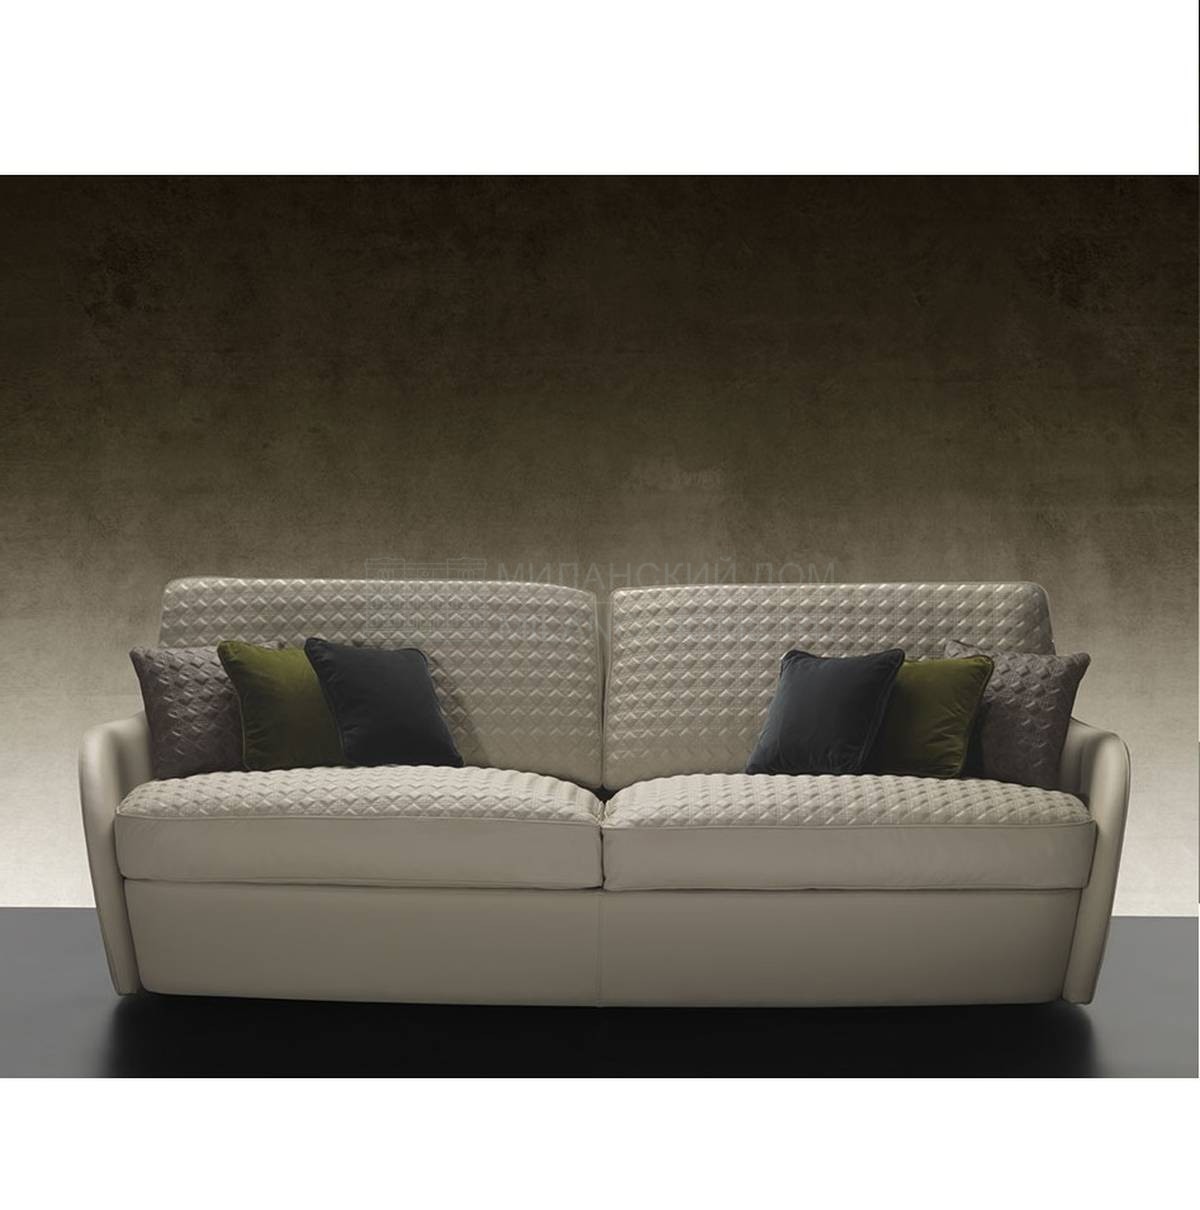 Прямой диван Swan Sofa из Италии фабрики REFLEX ANGELO